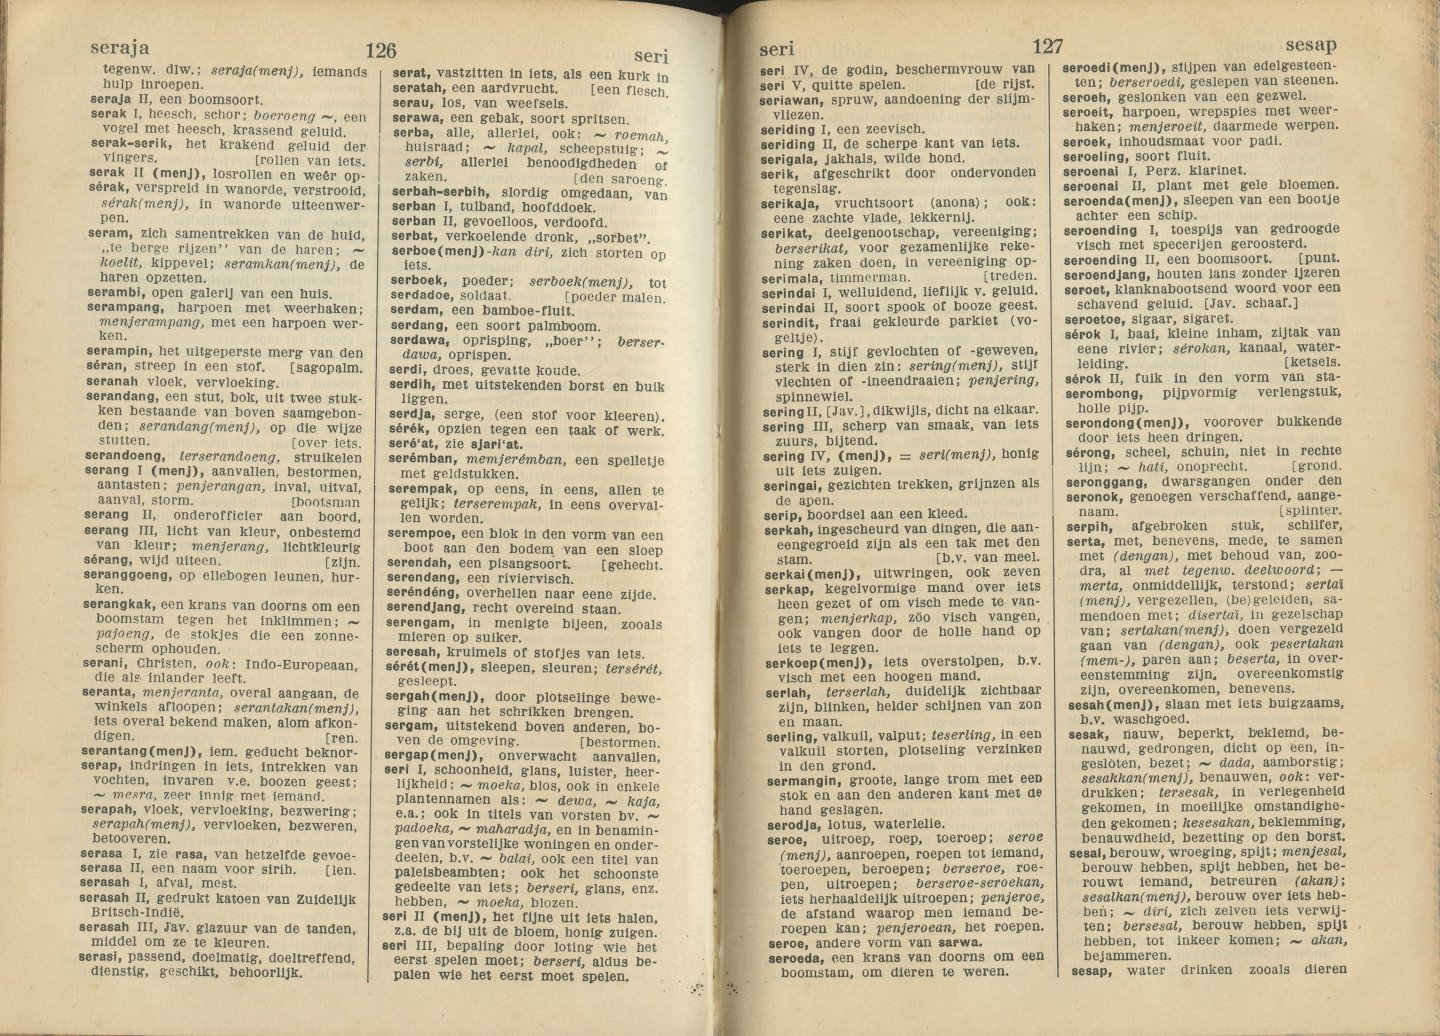 Ronkel, Ph. S. van - Maleisch woordenboek Maleiscj-Nederlandsch Nederlandsch-Maleisch